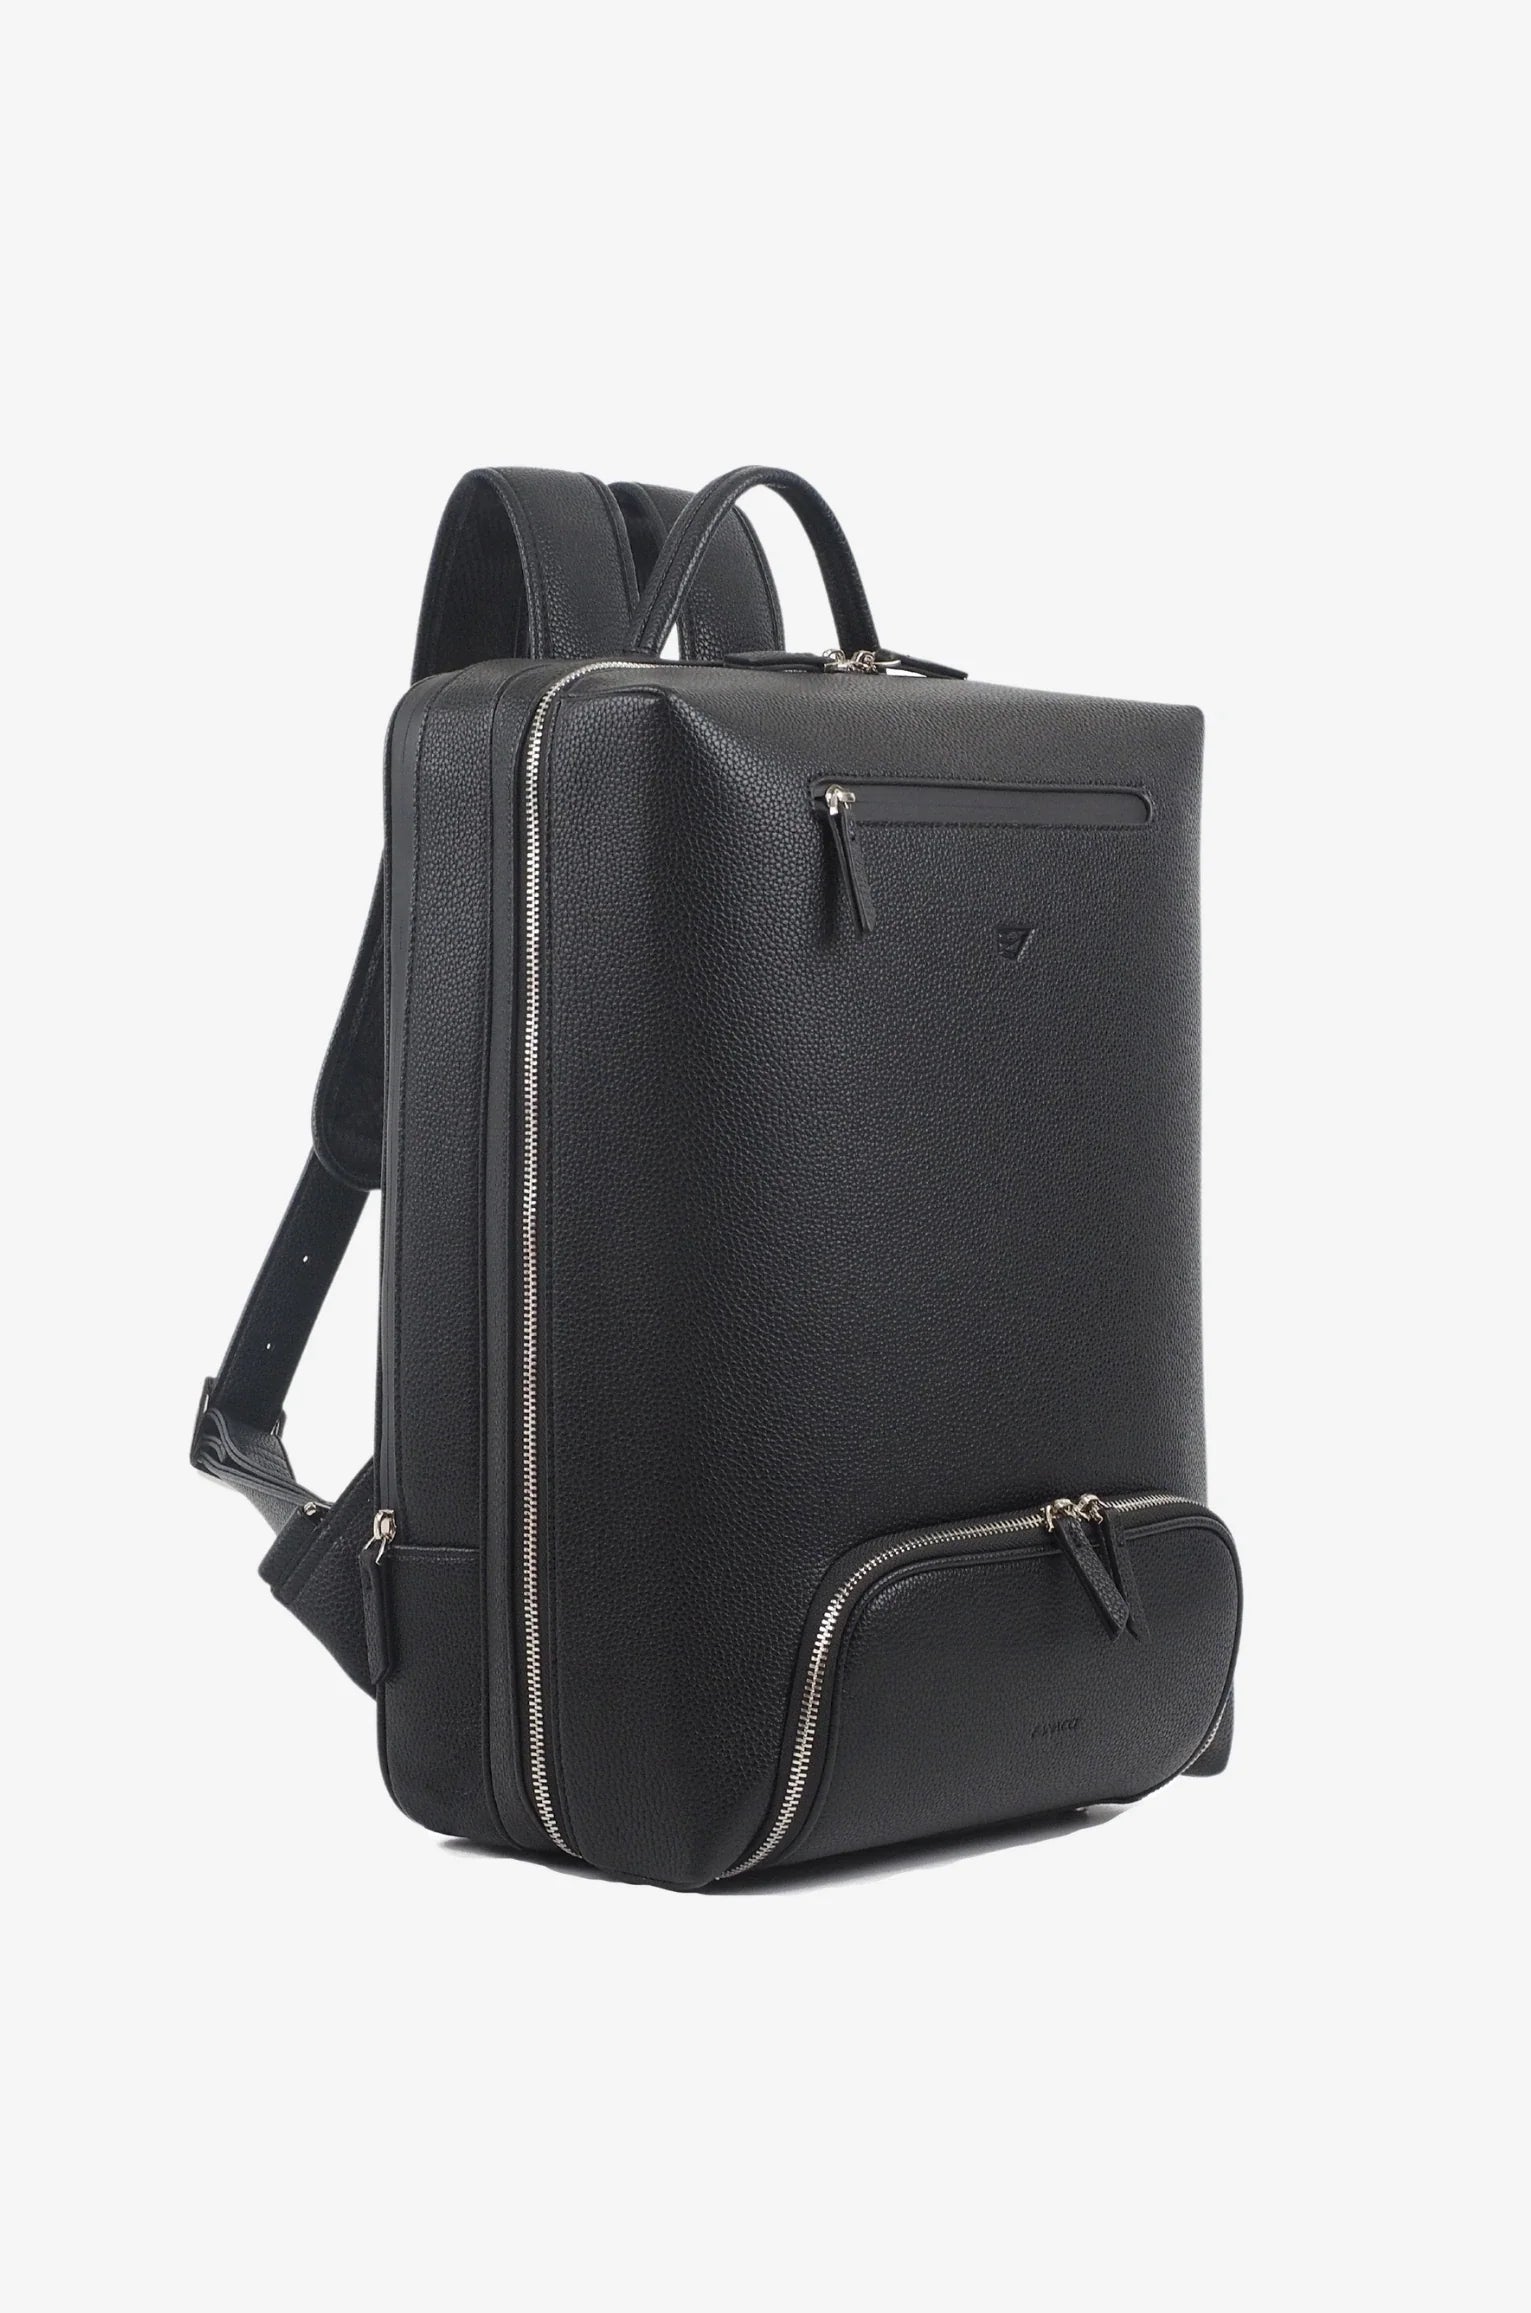 Innovator Backpack